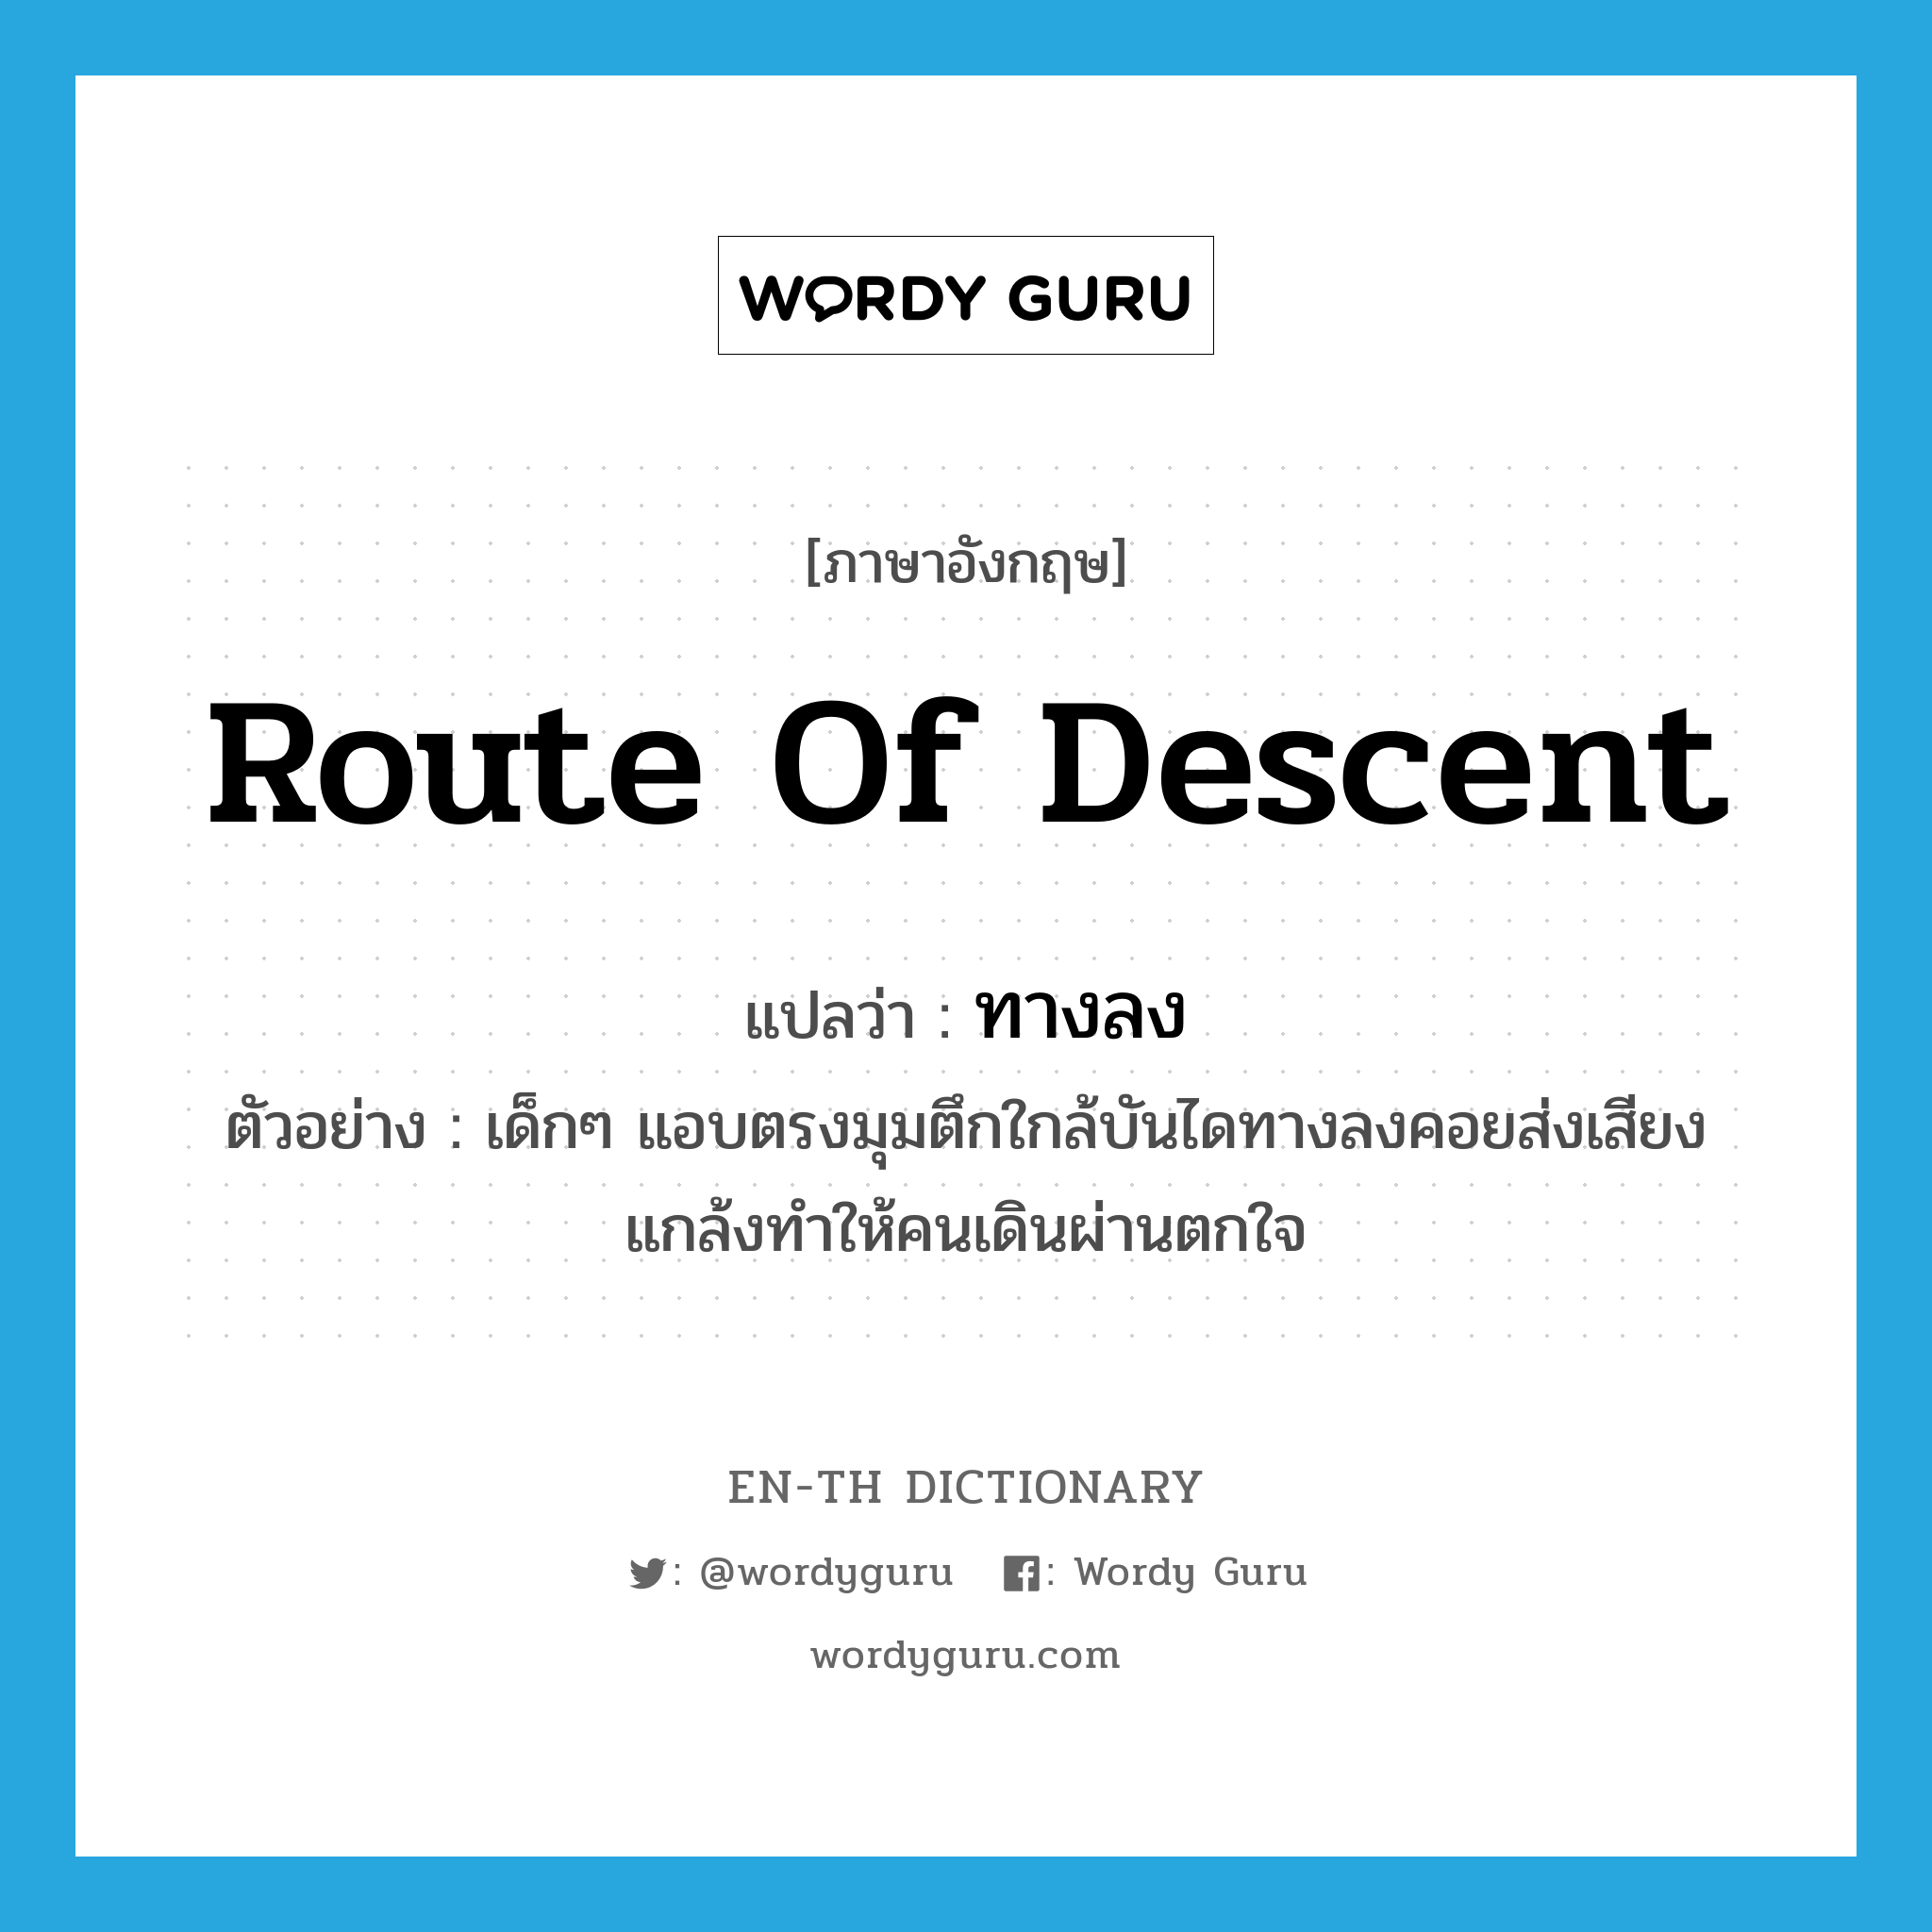 route of descent แปลว่า?, คำศัพท์ภาษาอังกฤษ route of descent แปลว่า ทางลง ประเภท N ตัวอย่าง เด็กๆ แอบตรงมุมตึกใกล้บันไดทางลงคอยส่งเสียงแกล้งทำให้คนเดินผ่านตกใจ หมวด N